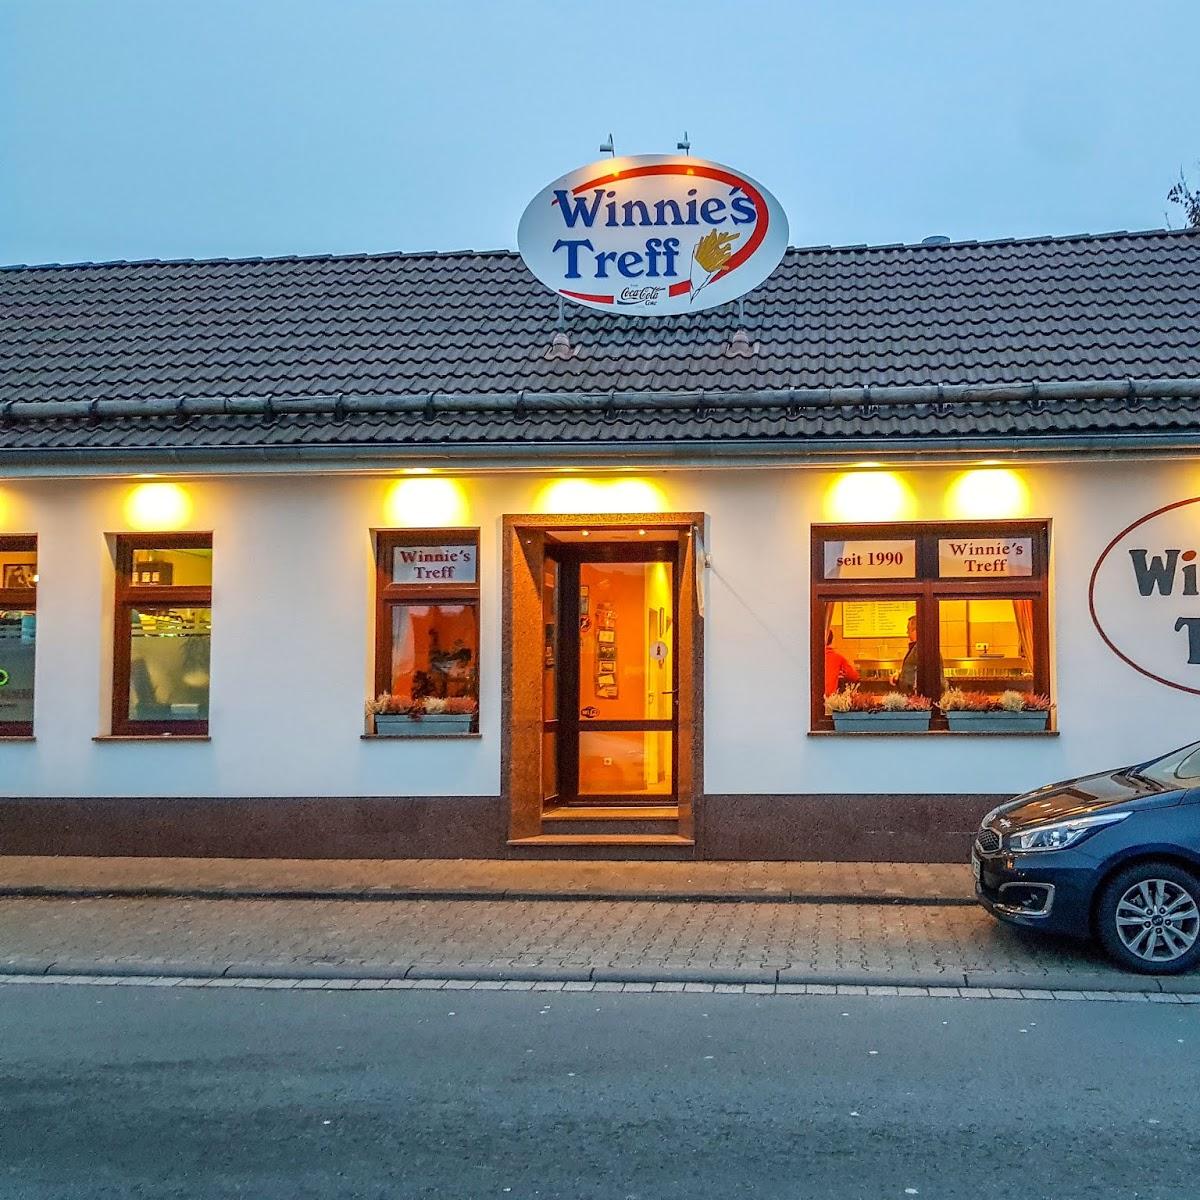 Restaurant "Winnie